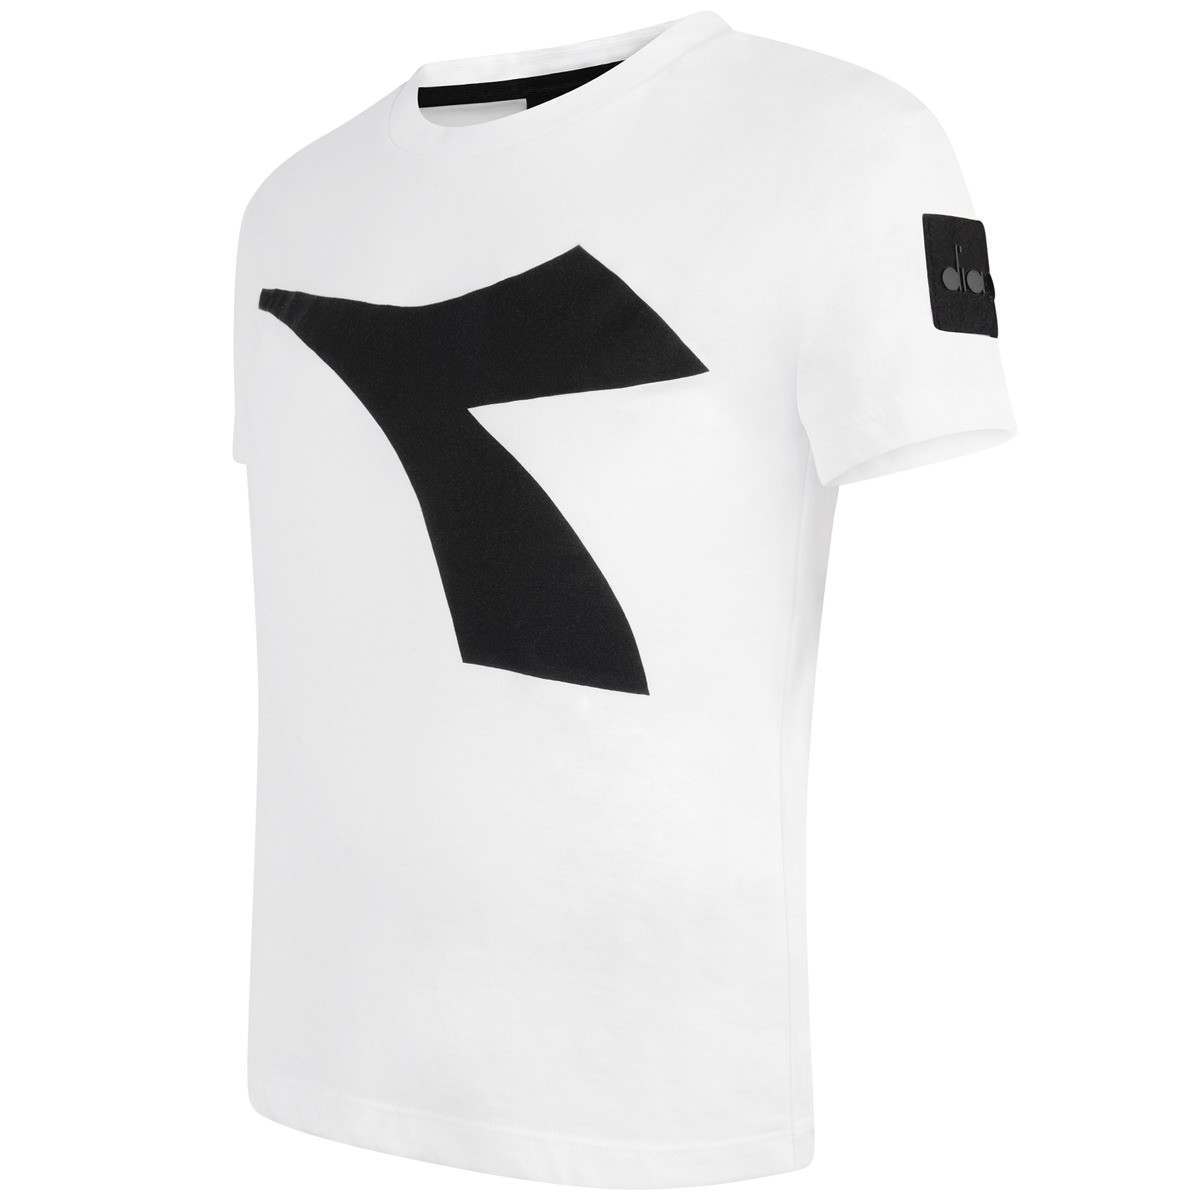 Diadora Shirt Logo - Diadora White Logo Print Jersey Top